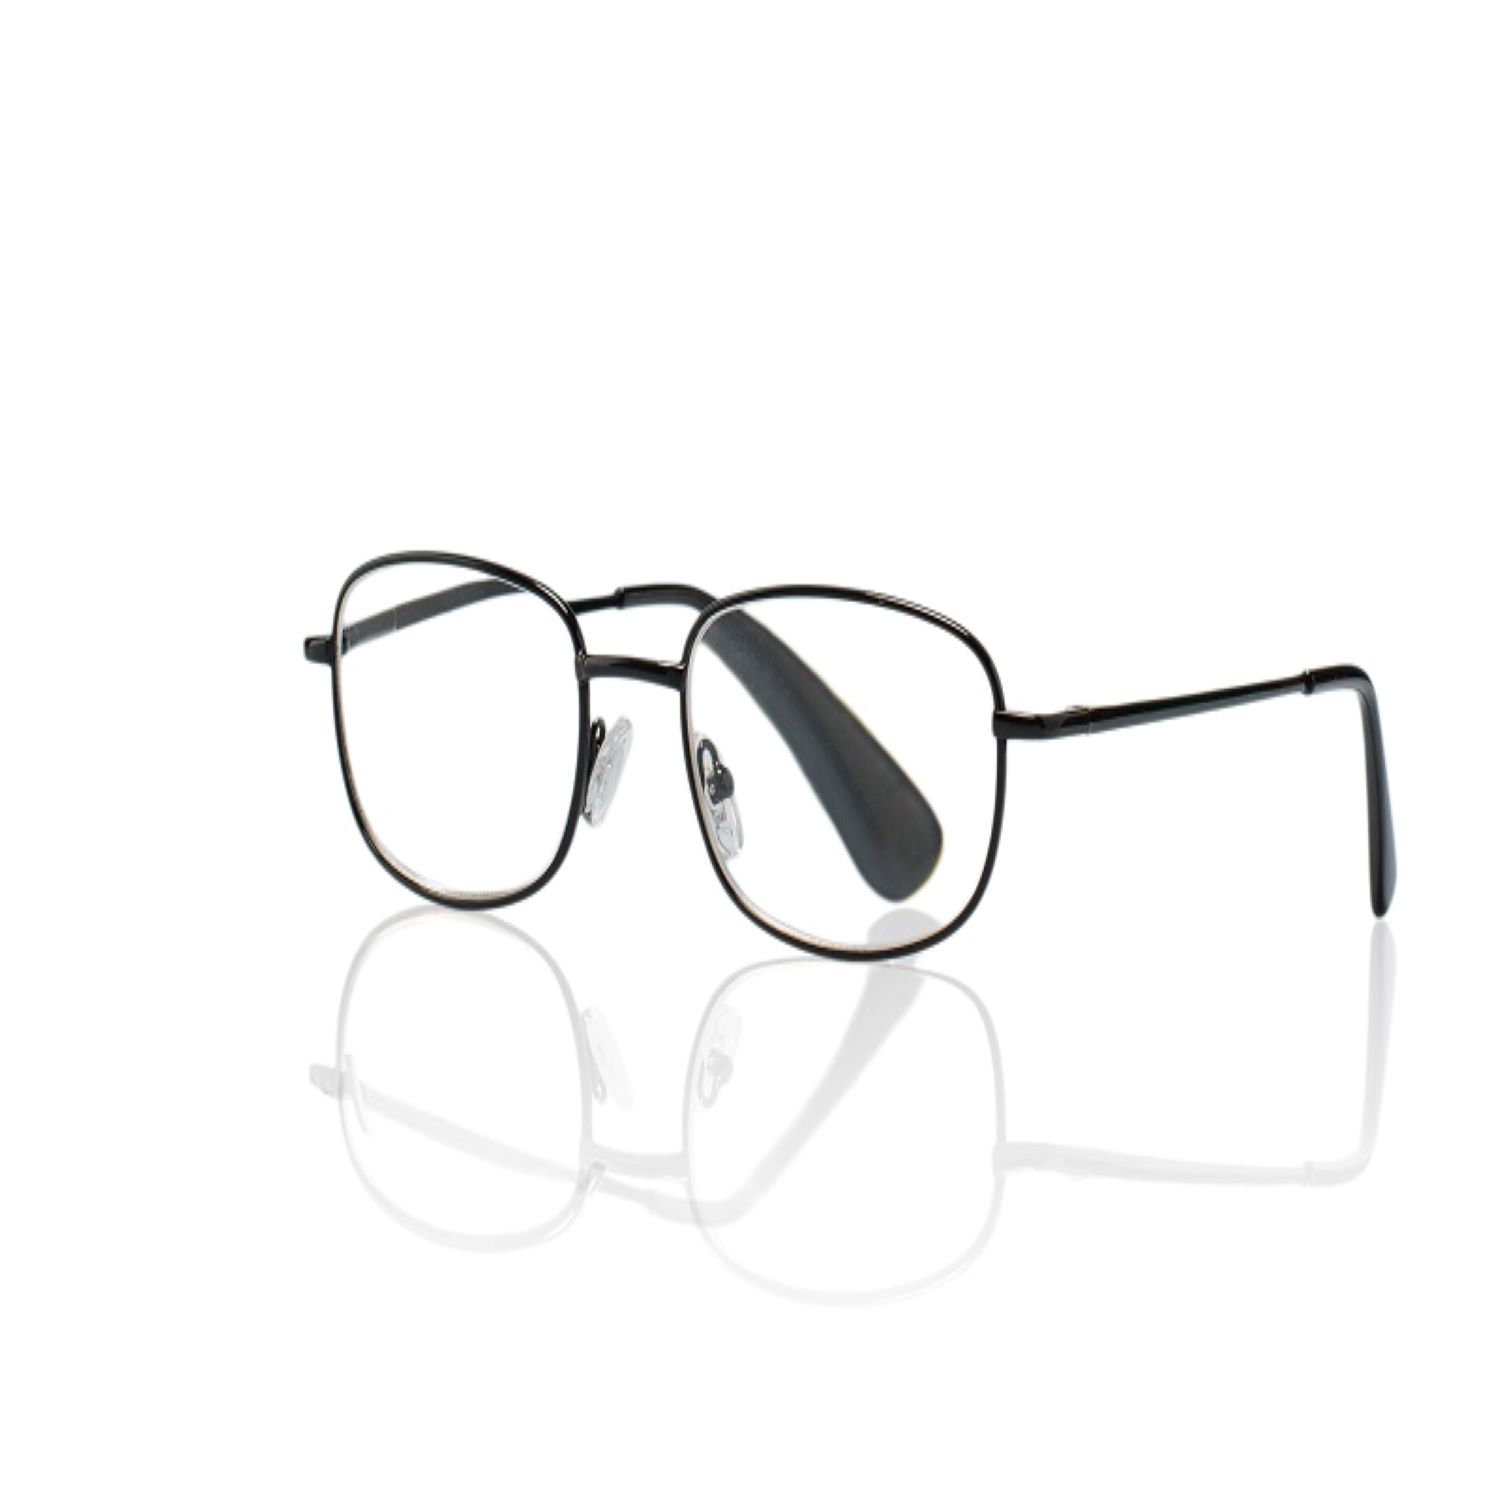 Очки корригирующие для чтения темно-серые металлические полукруглые +1,0 очки корригирующие для чтения темно серые металл прямоугольные 1 0